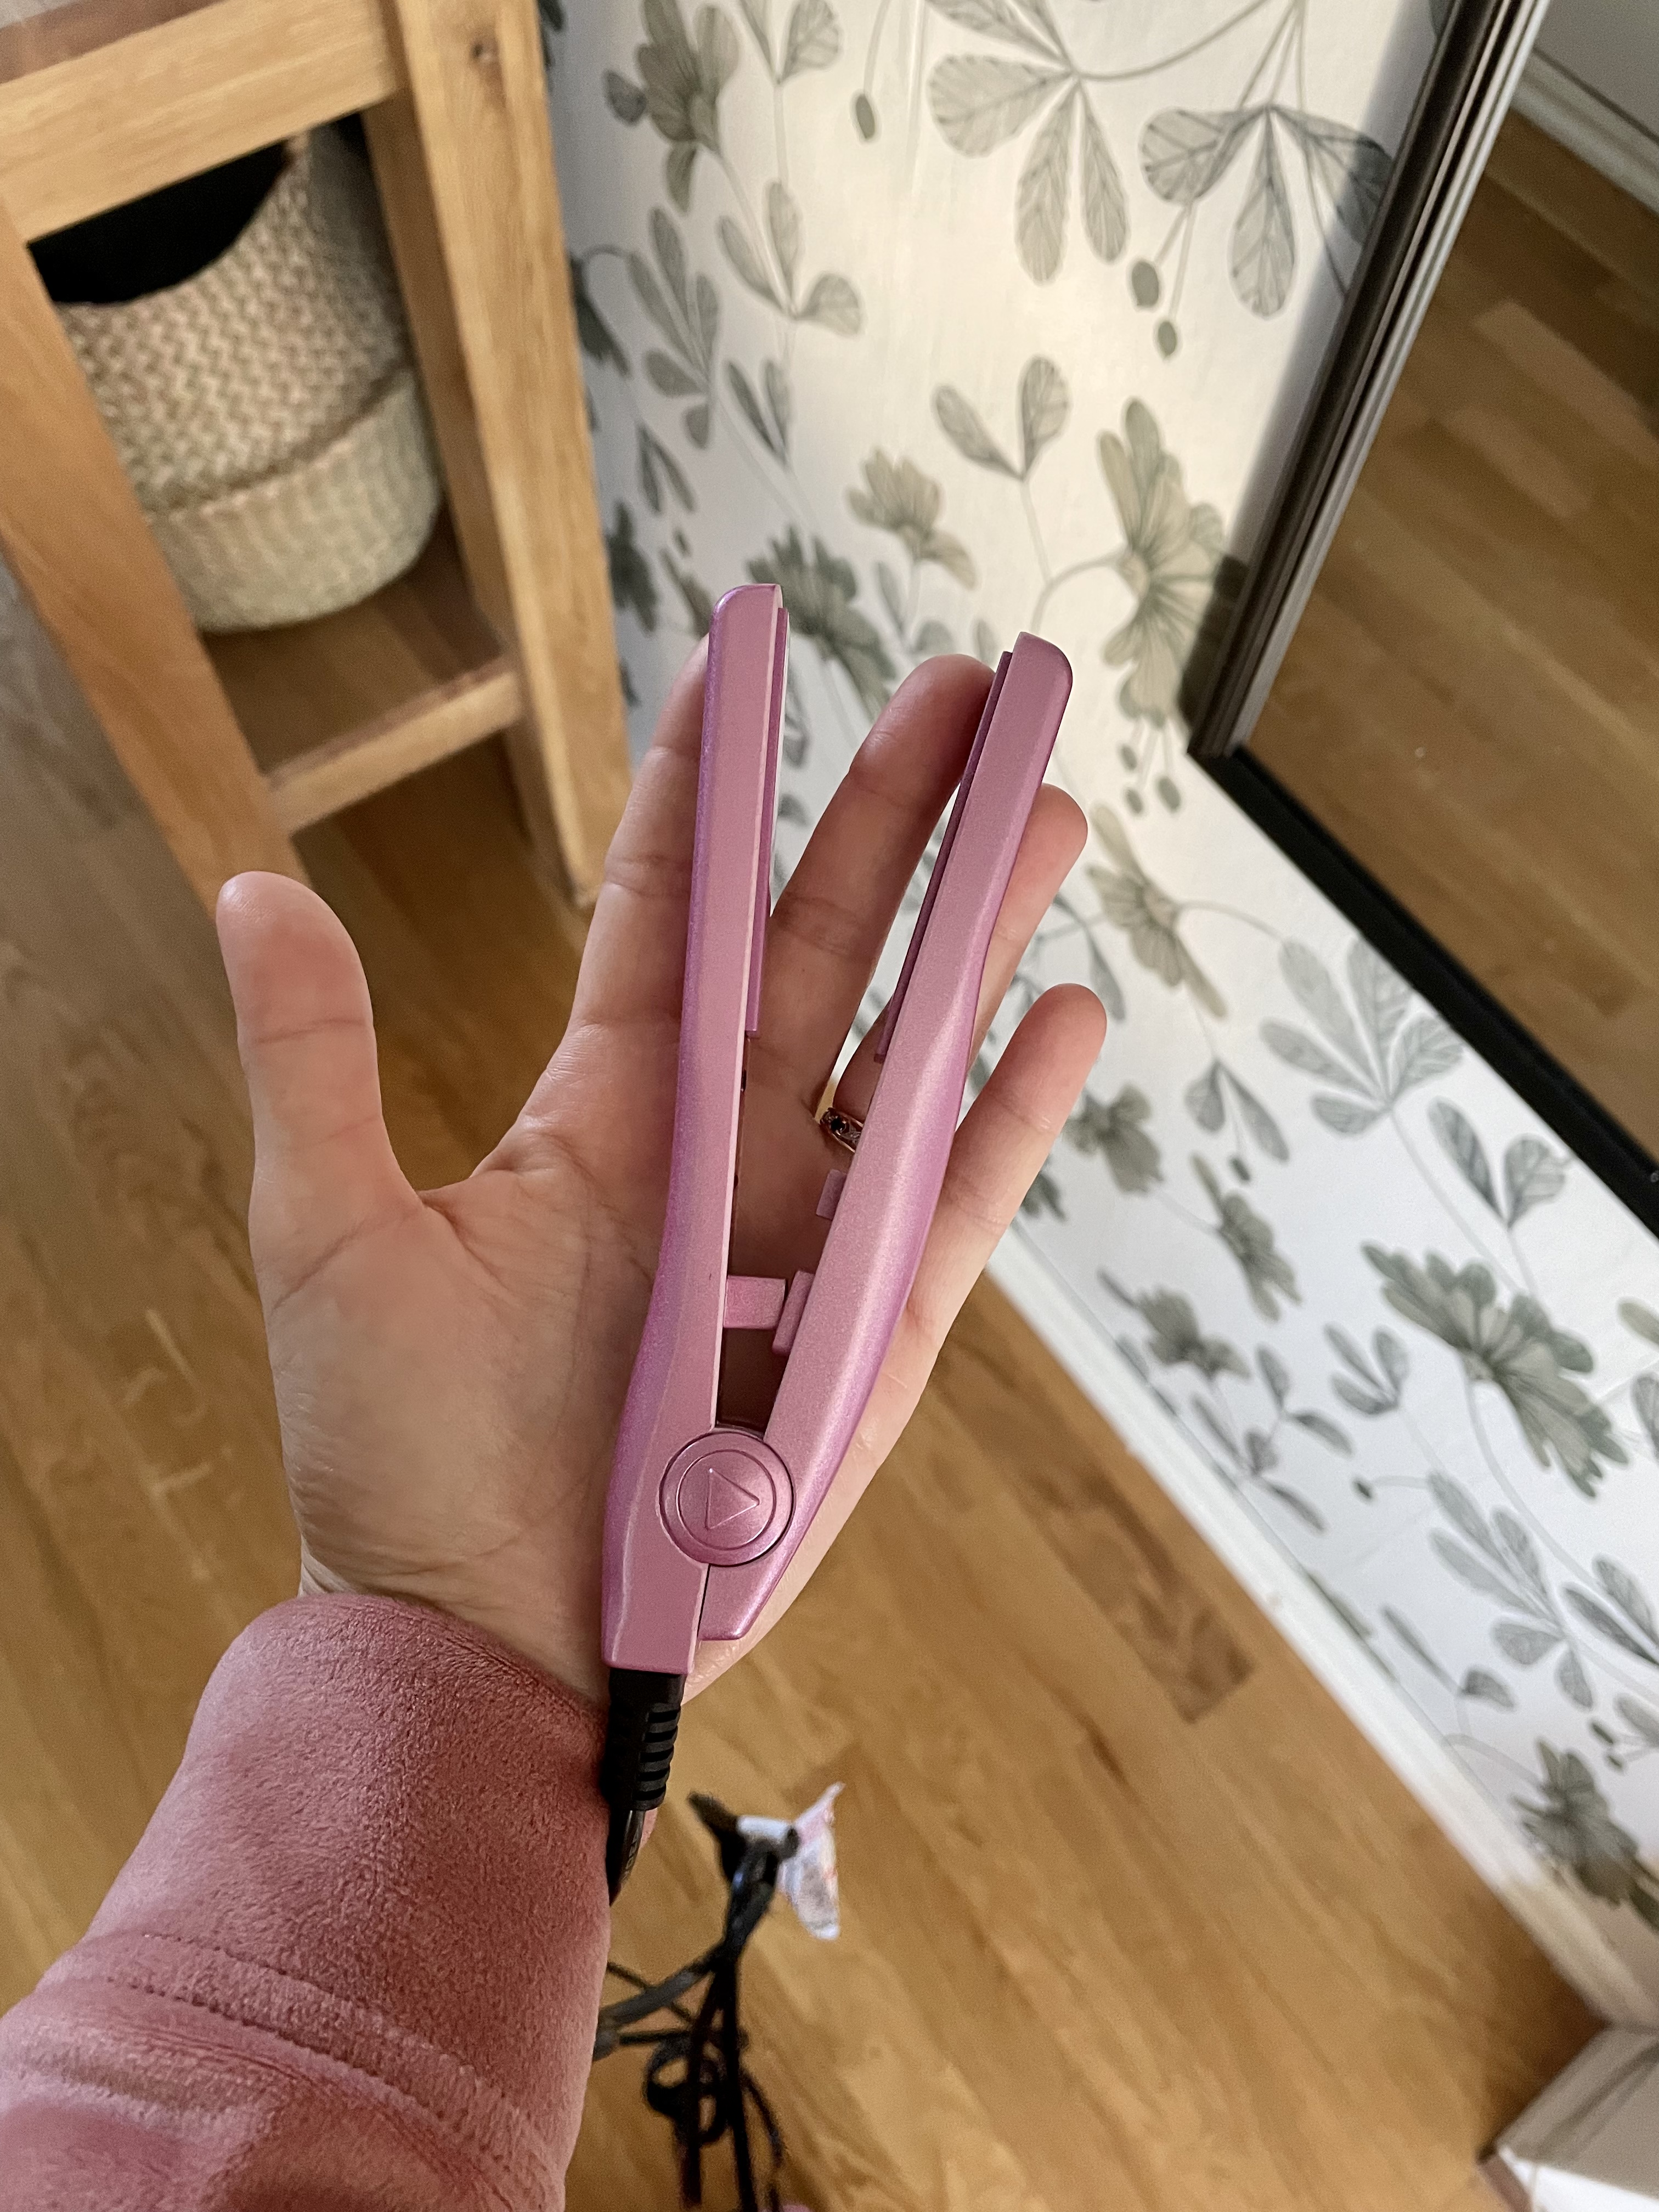 Cera Mini Flat Iron, pink - MyBeauty24